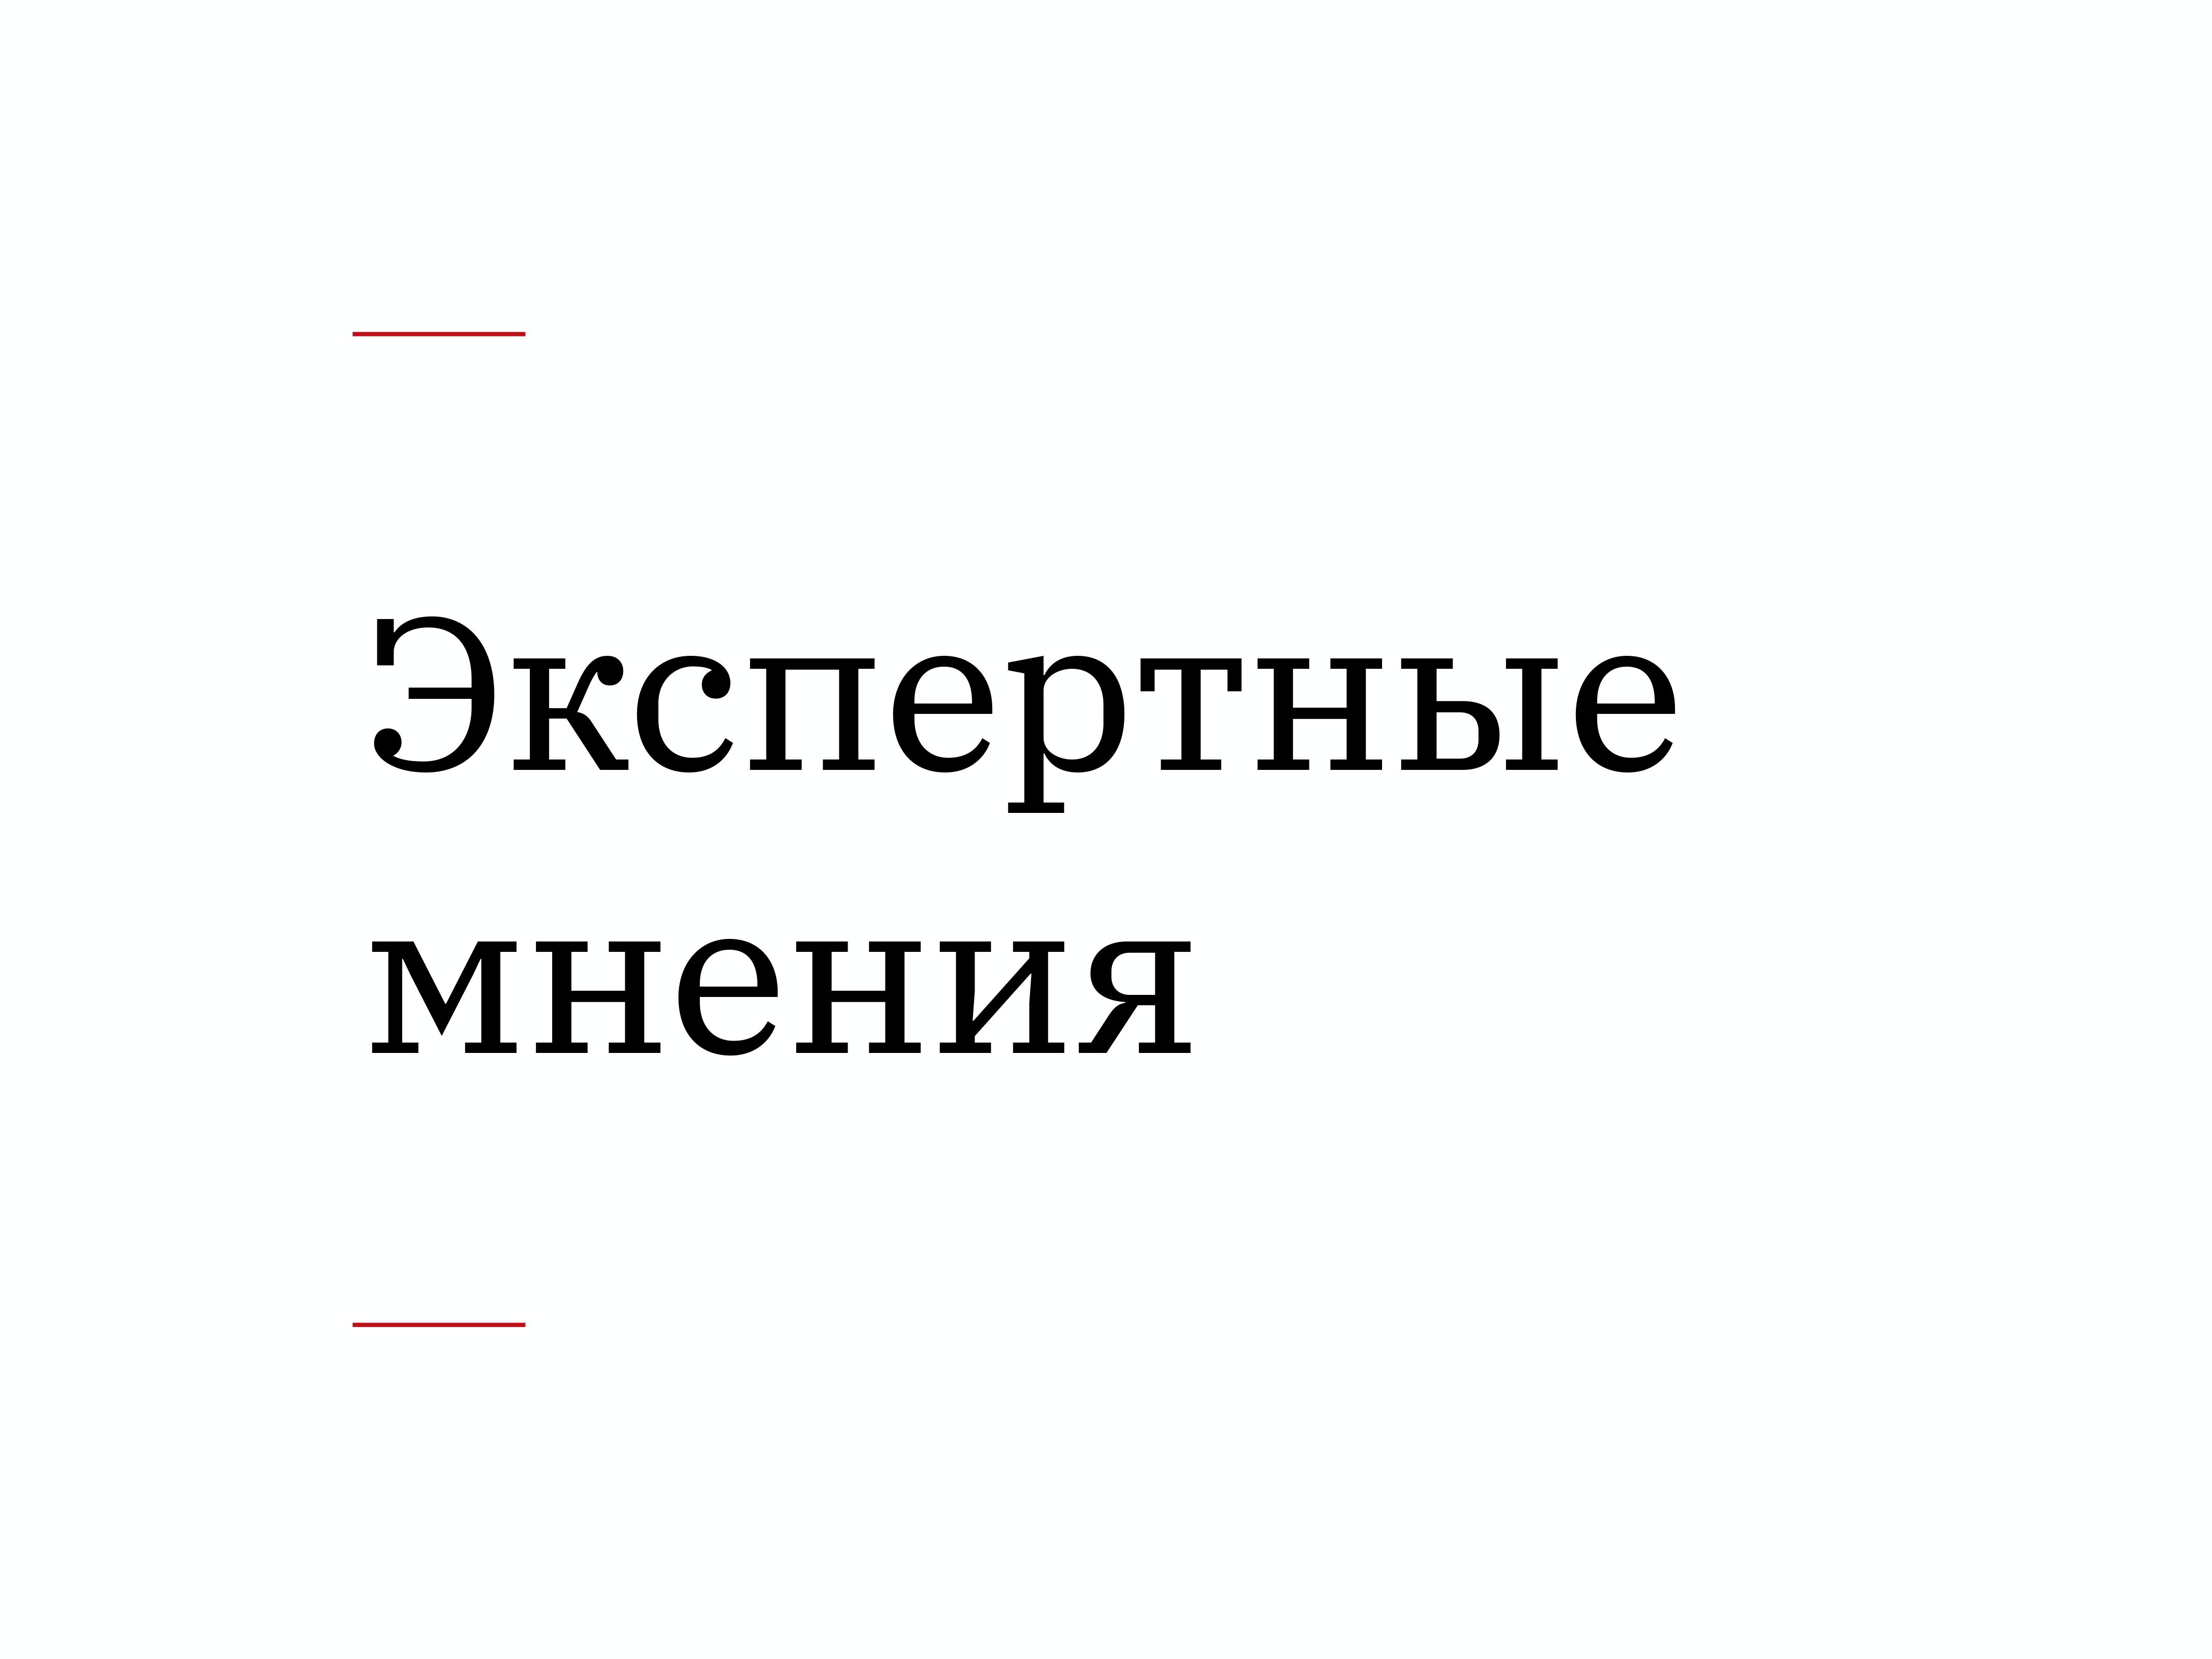 Алексей Каптерев: Критическое мышление 101 (часть 2) - 36